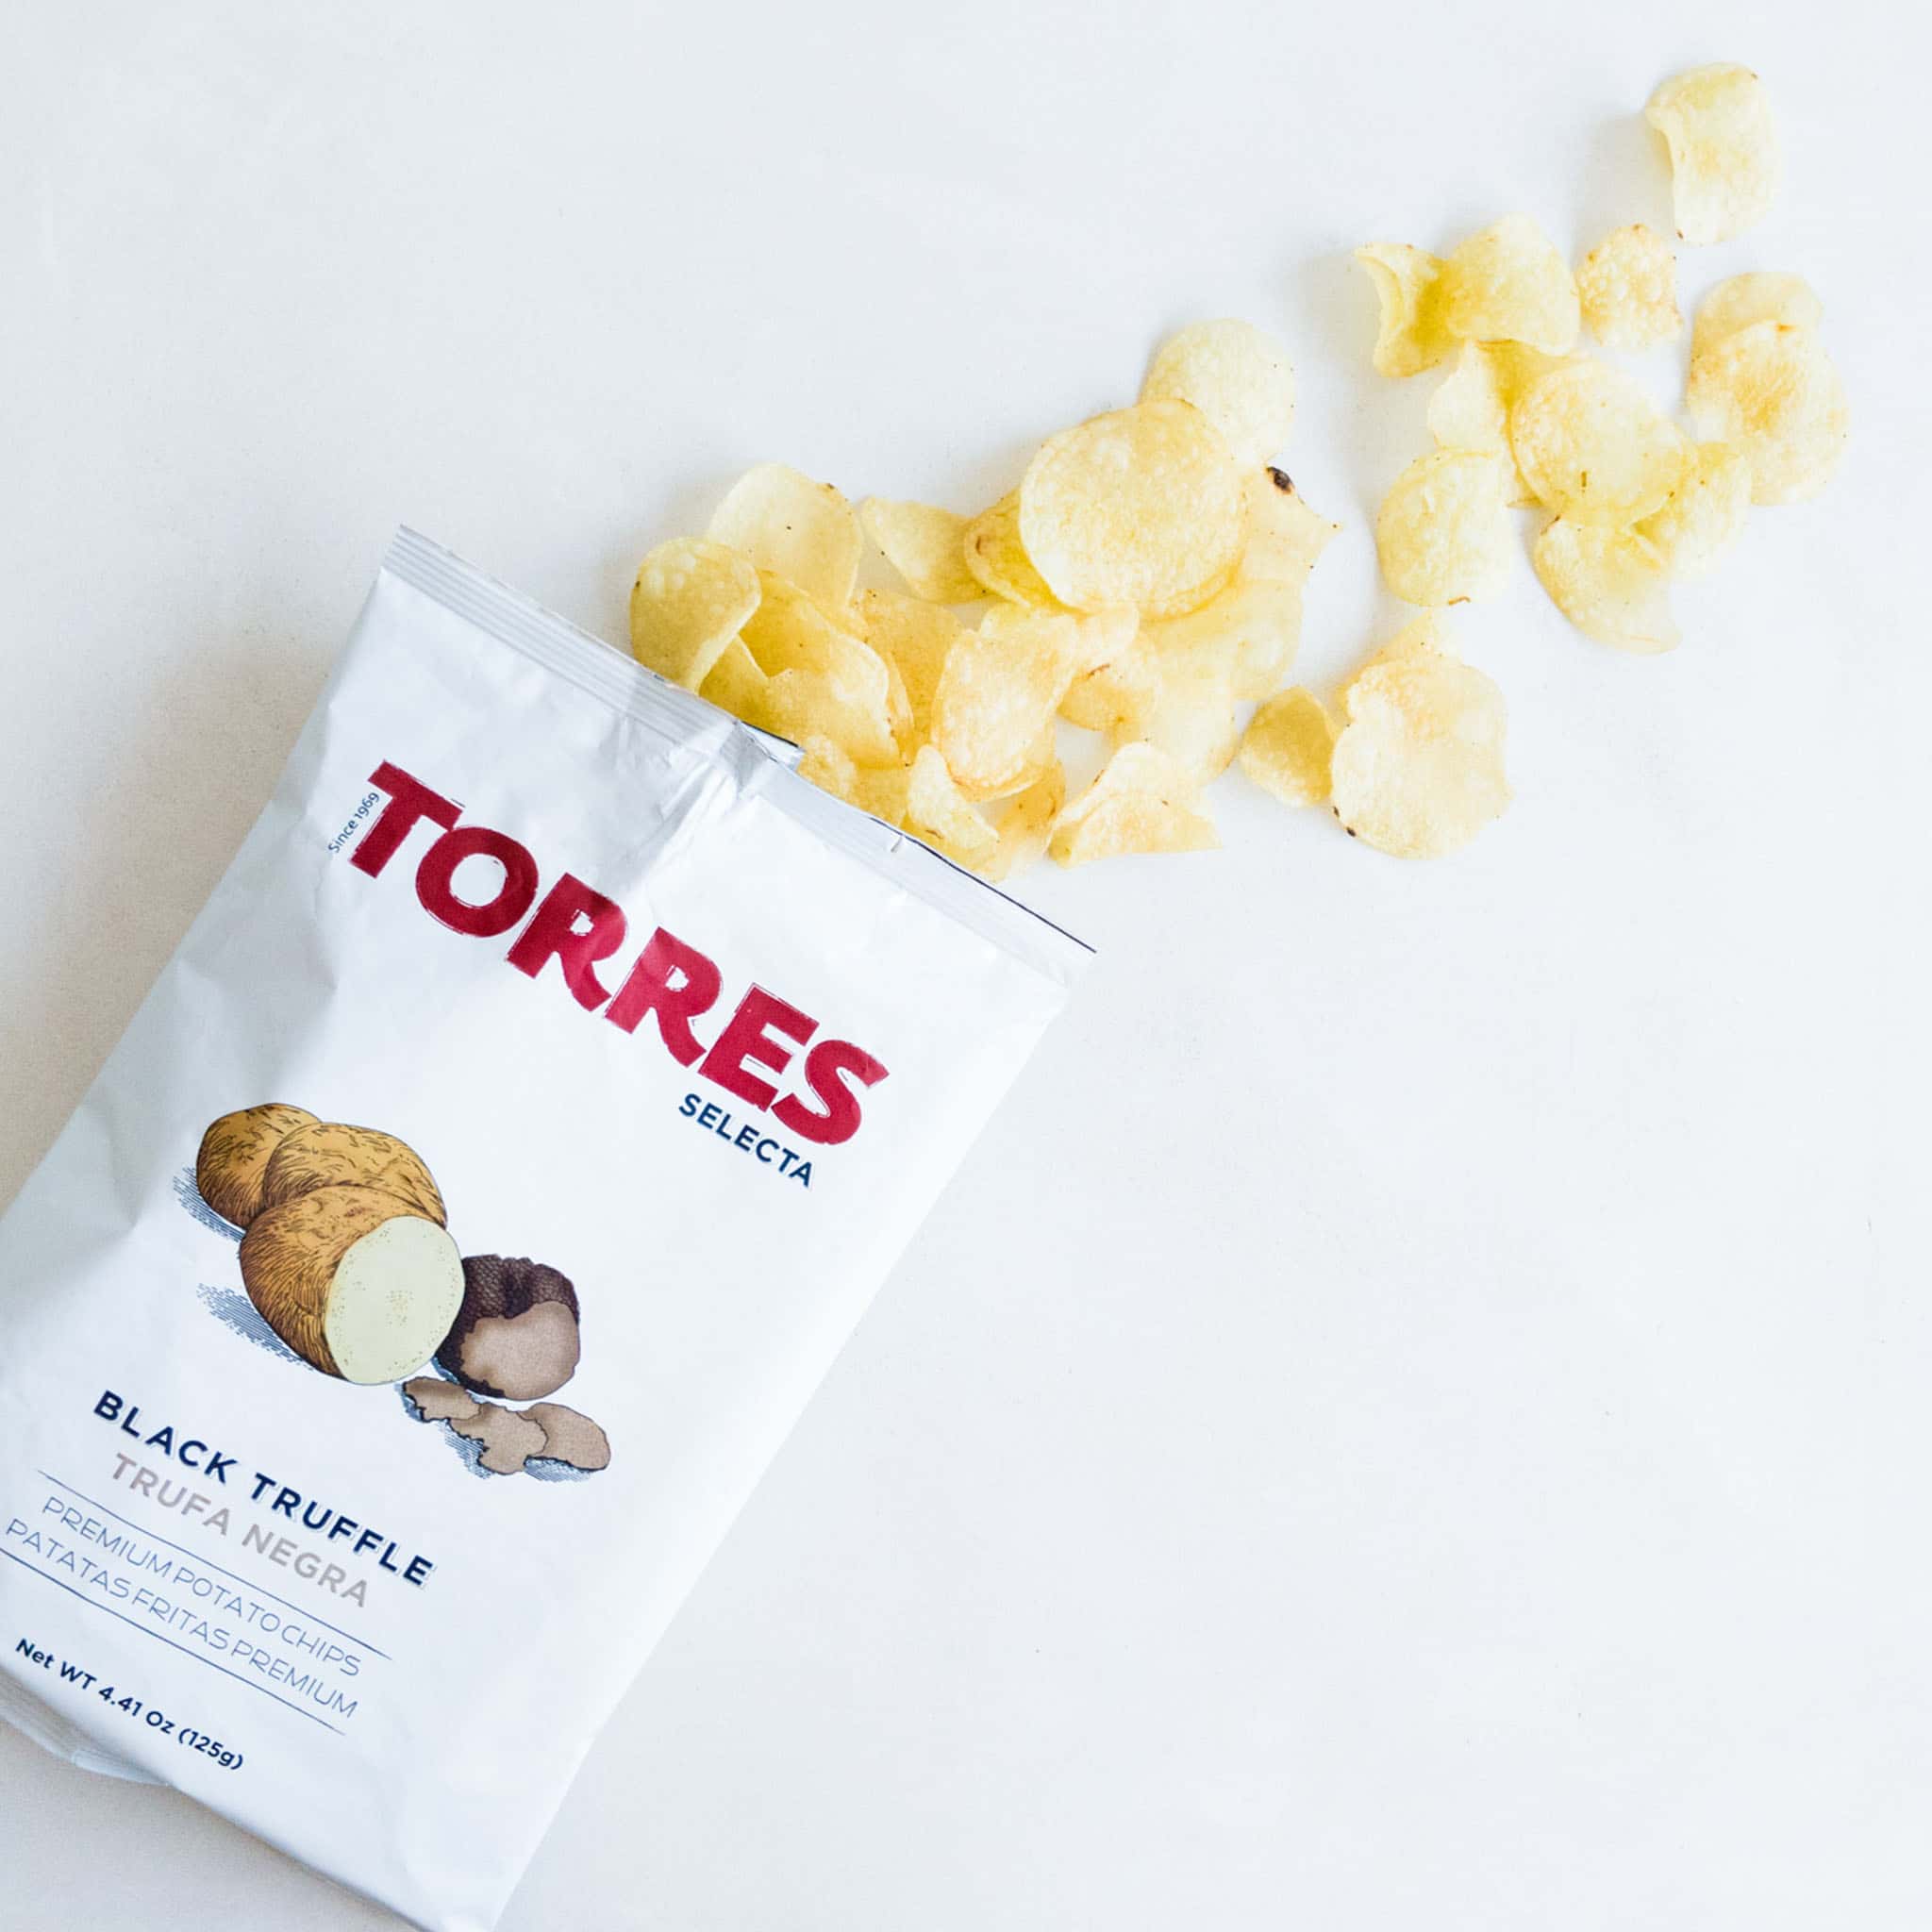 Torres Black Truffle Crisps 125g